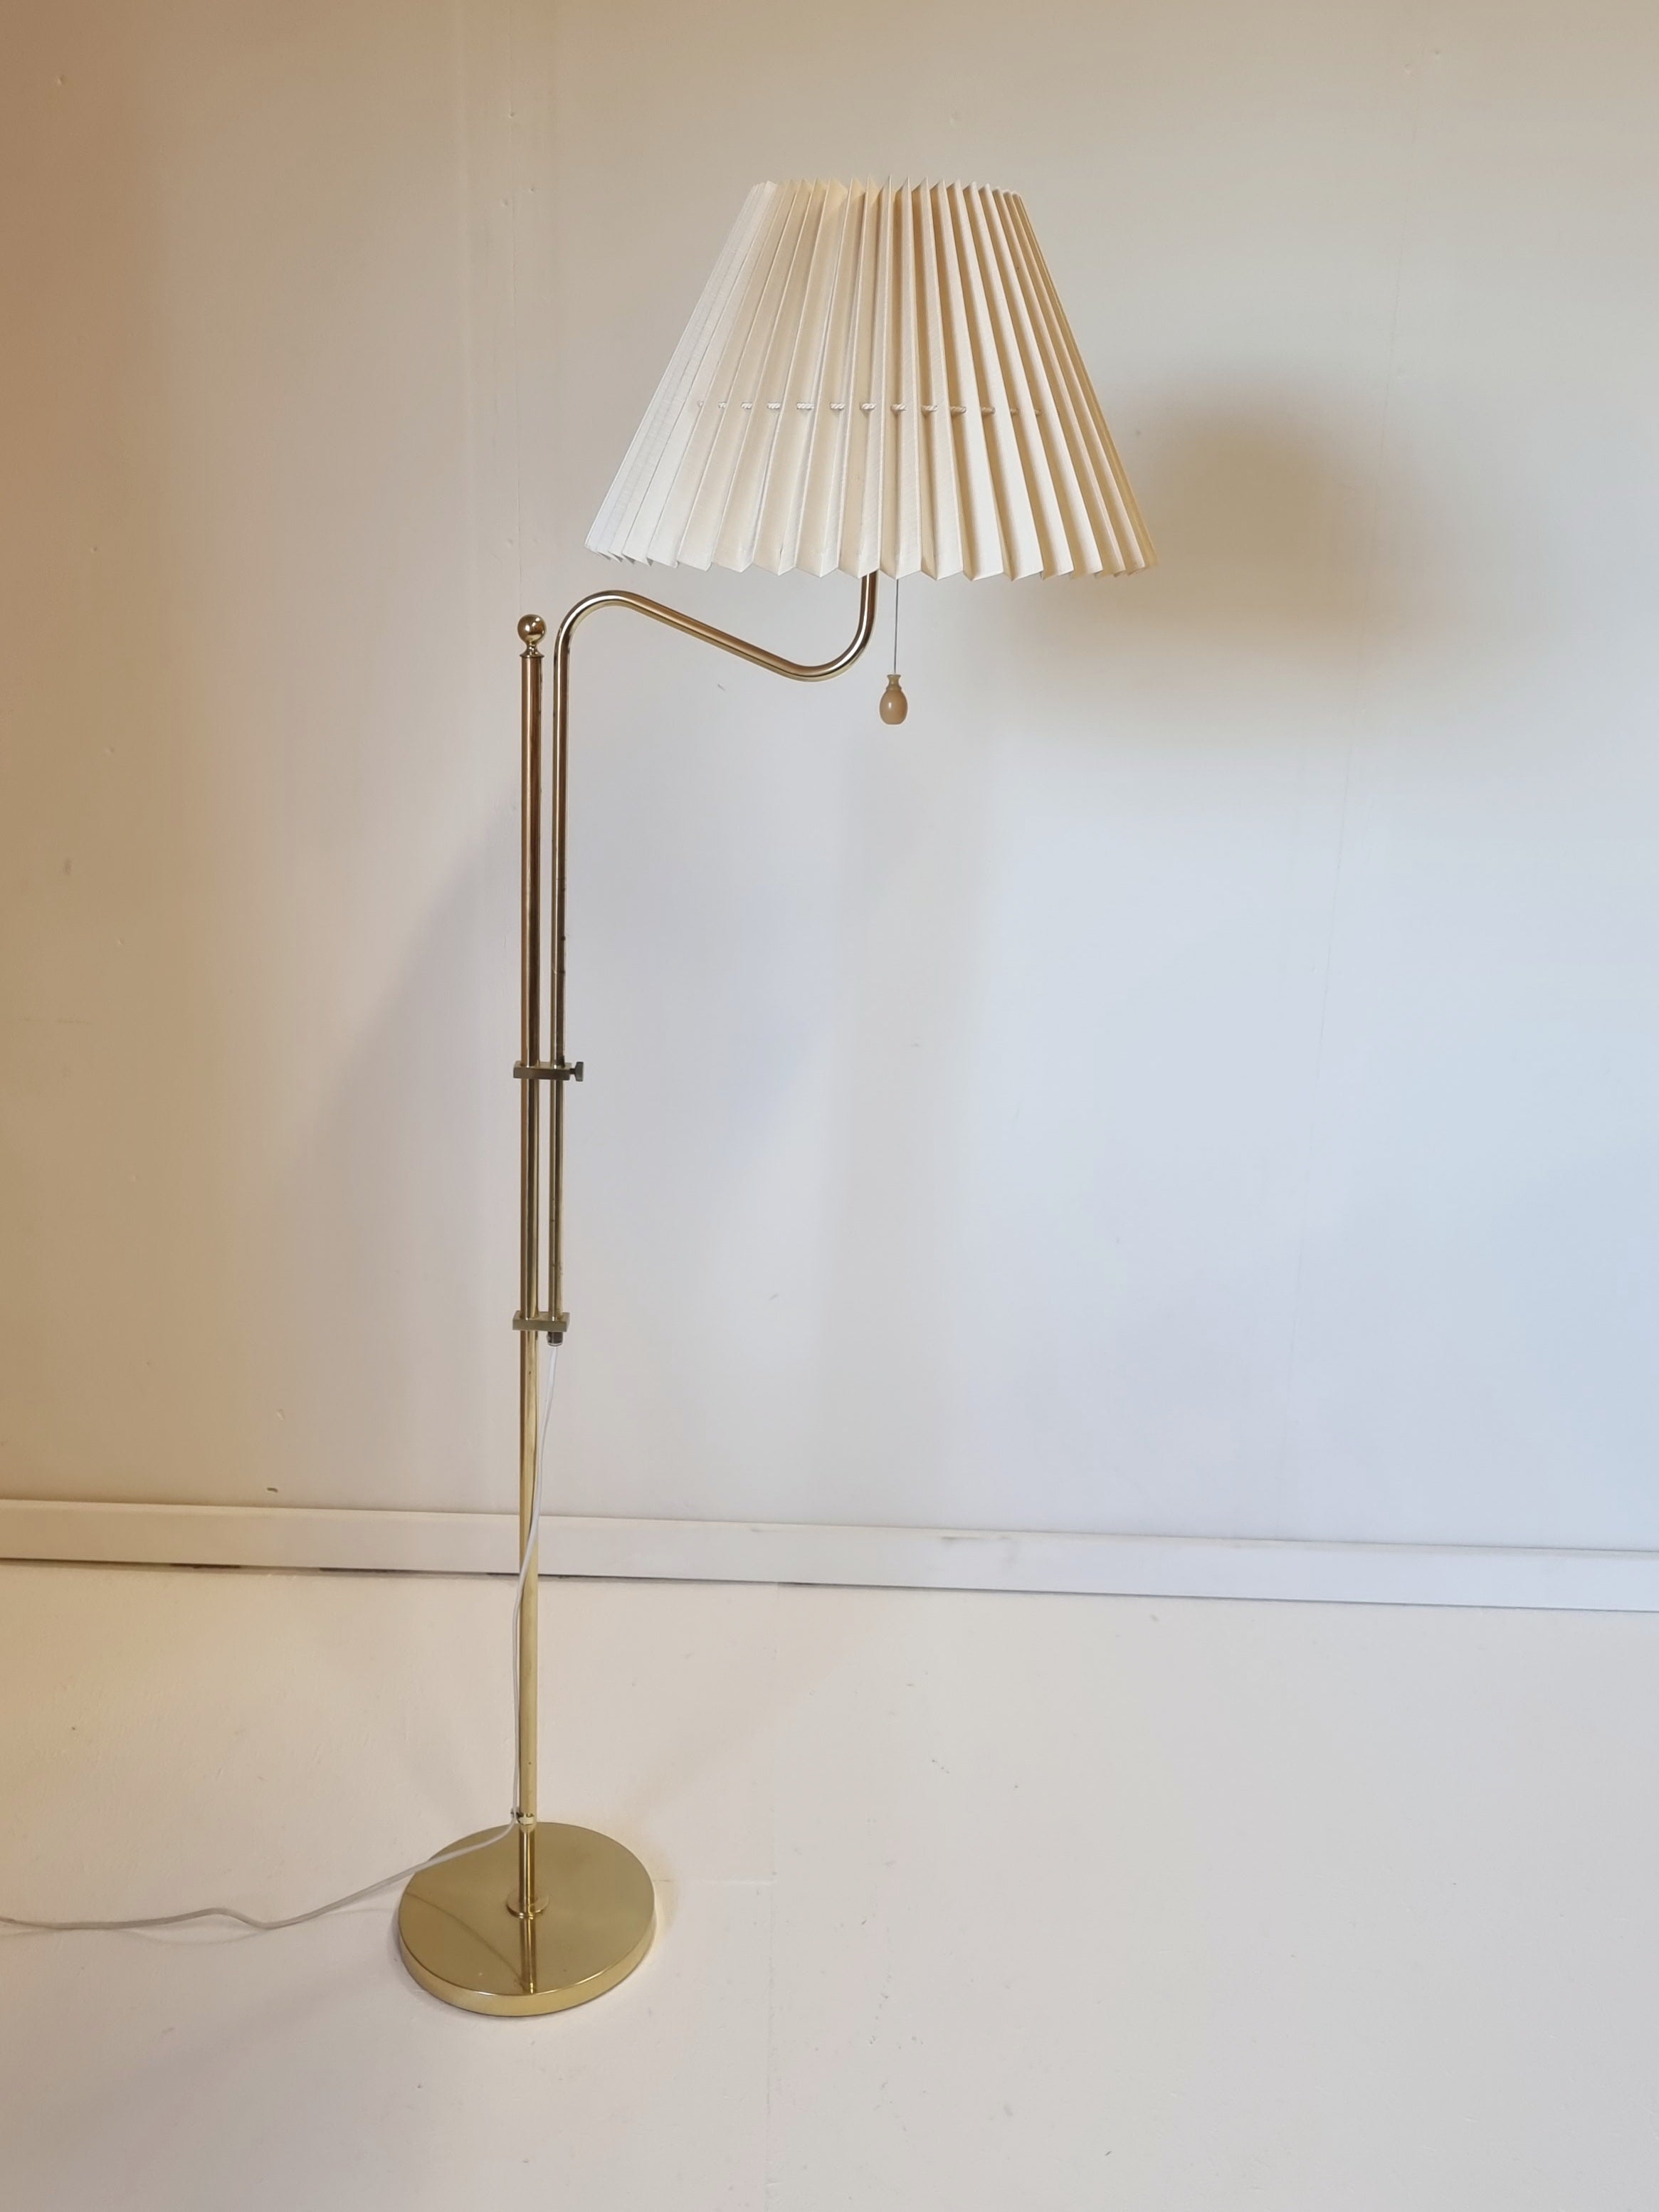 Bergboms, Adjustable Floor Lamp G-132 in brass, Scandinavian / Midcentury Modern